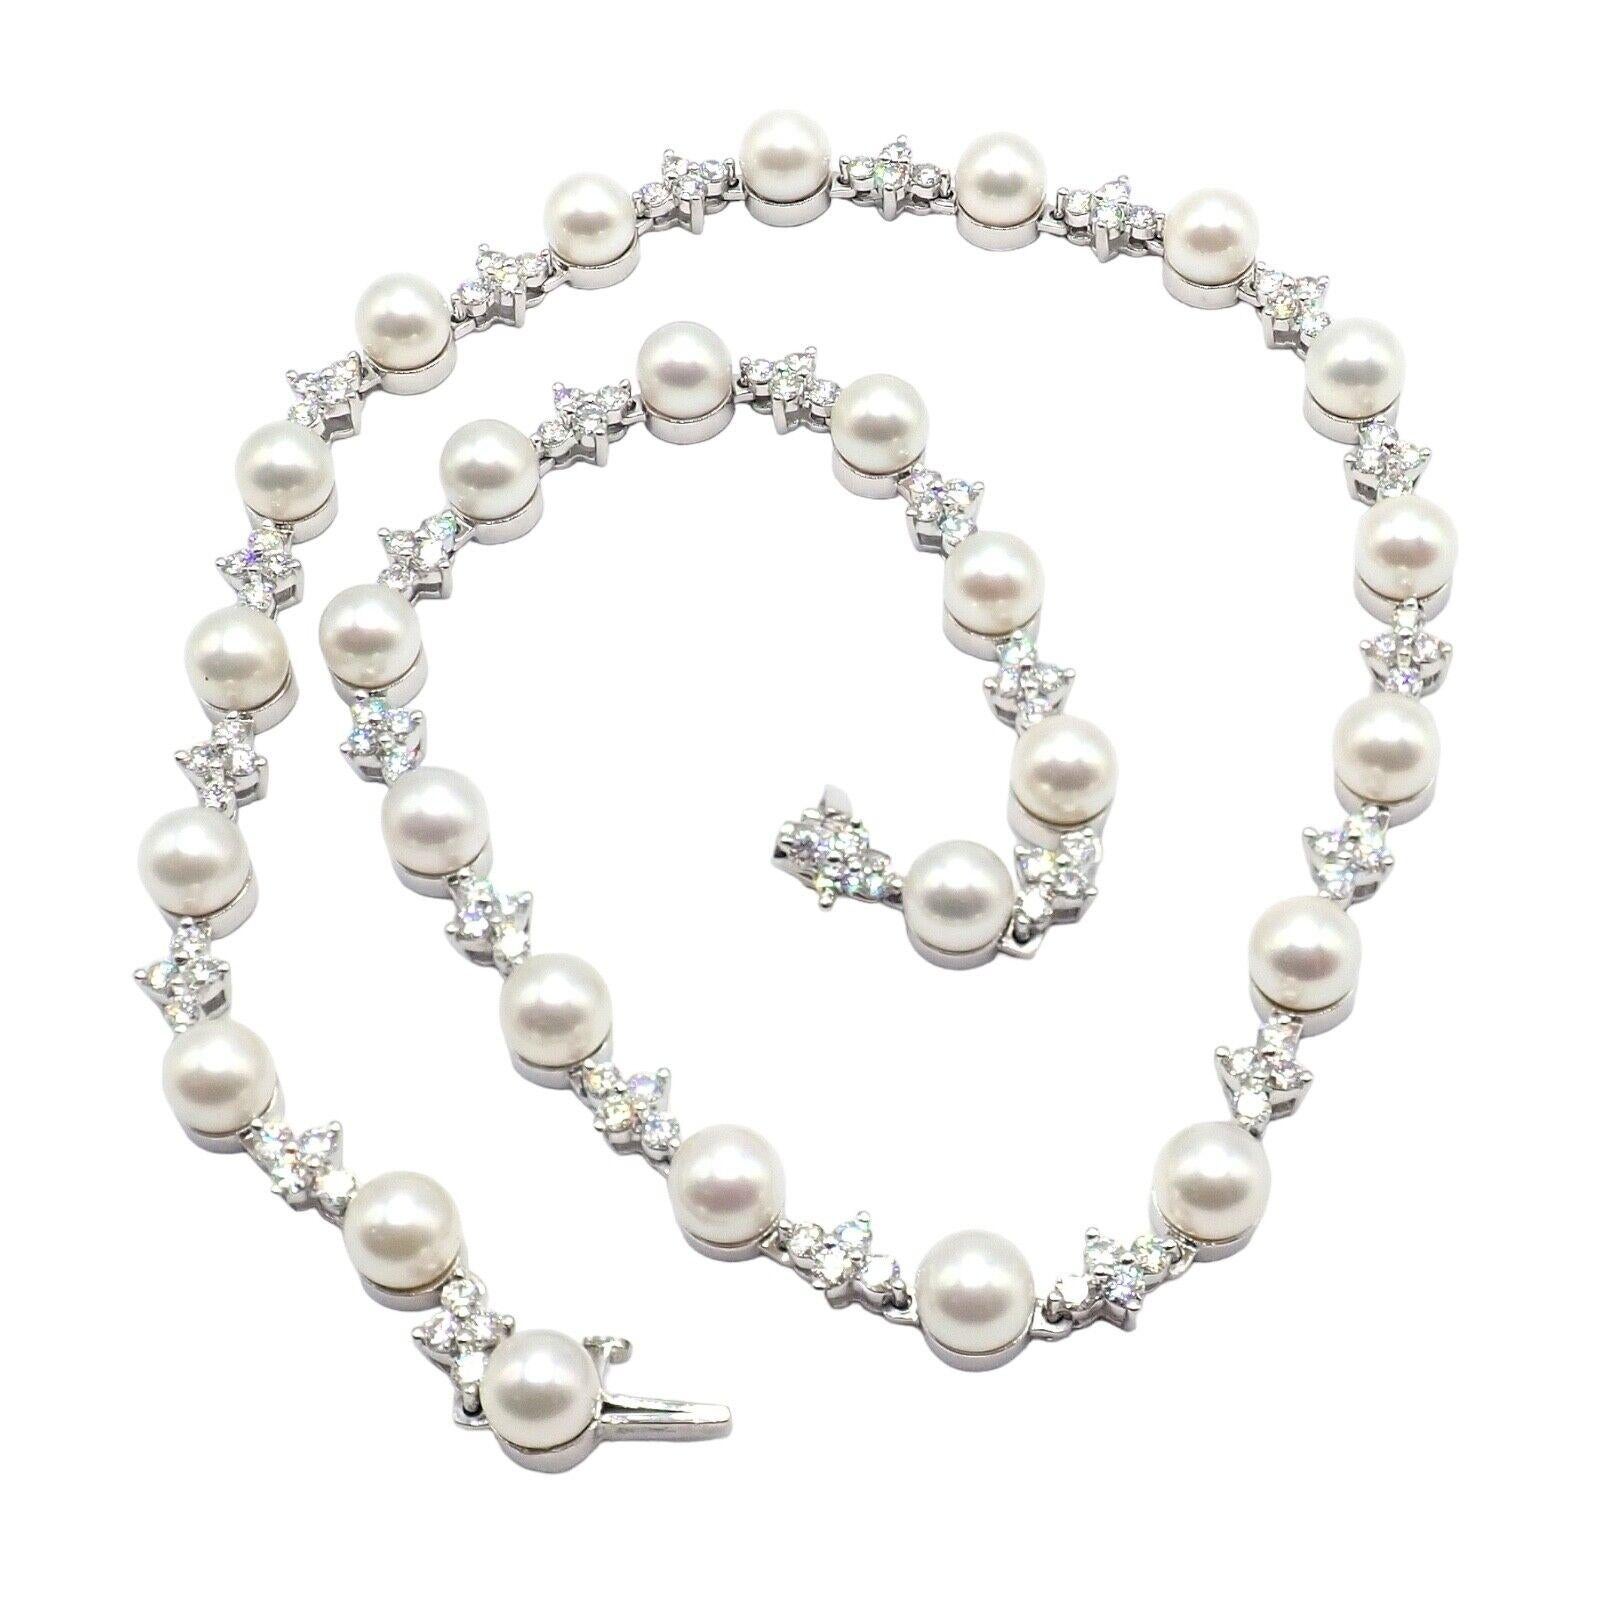 L'authentique ! Le collier de perles de 6,5 mm en platine et diamants de Tiffany & Co est un bijou captivant. Réalisée en platine, elle présente un attrait luxueux et intemporel. Le collier met en valeur de superbes motifs en perles de 6,5 mm,